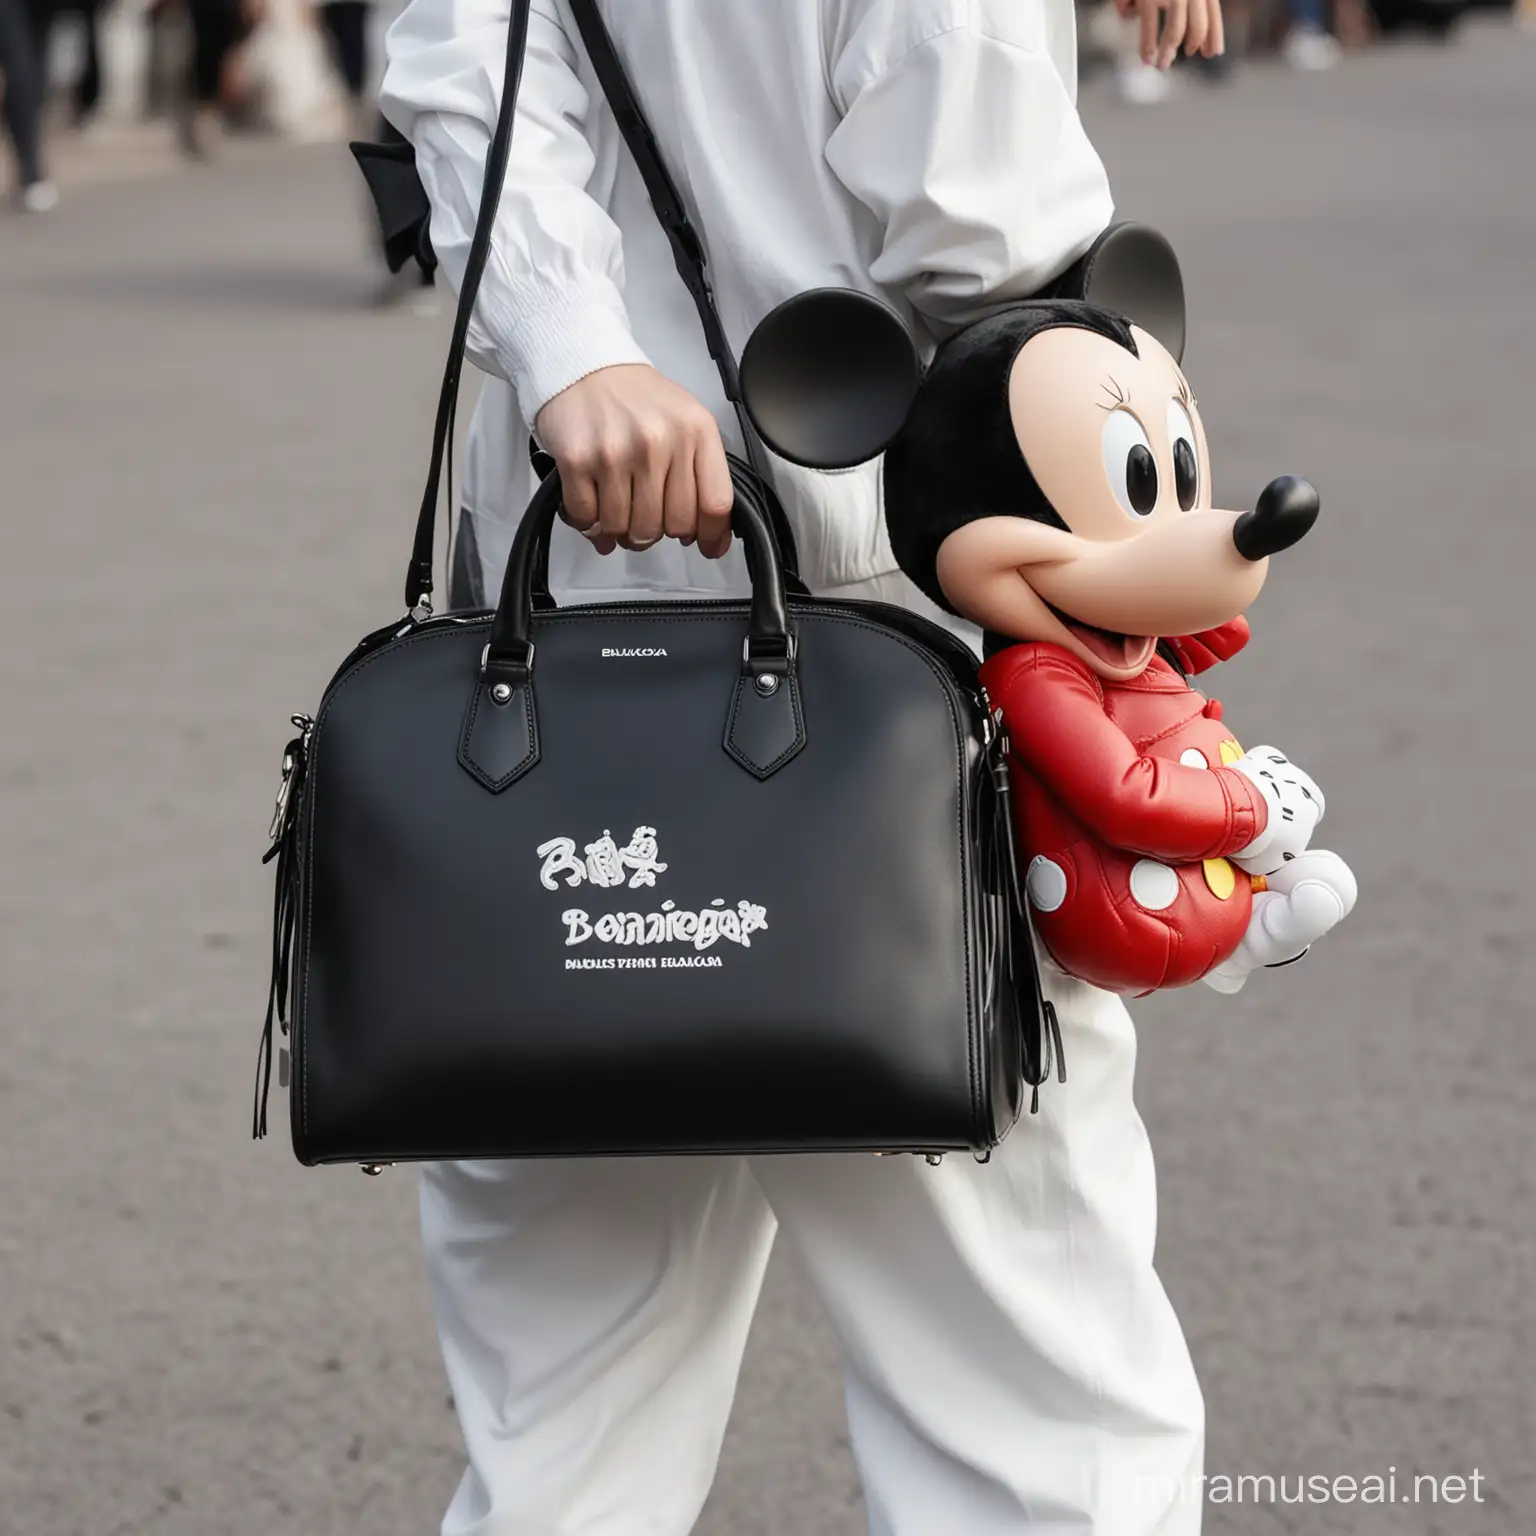 Brazo de mickey mouse cargando un bolso balenciaga